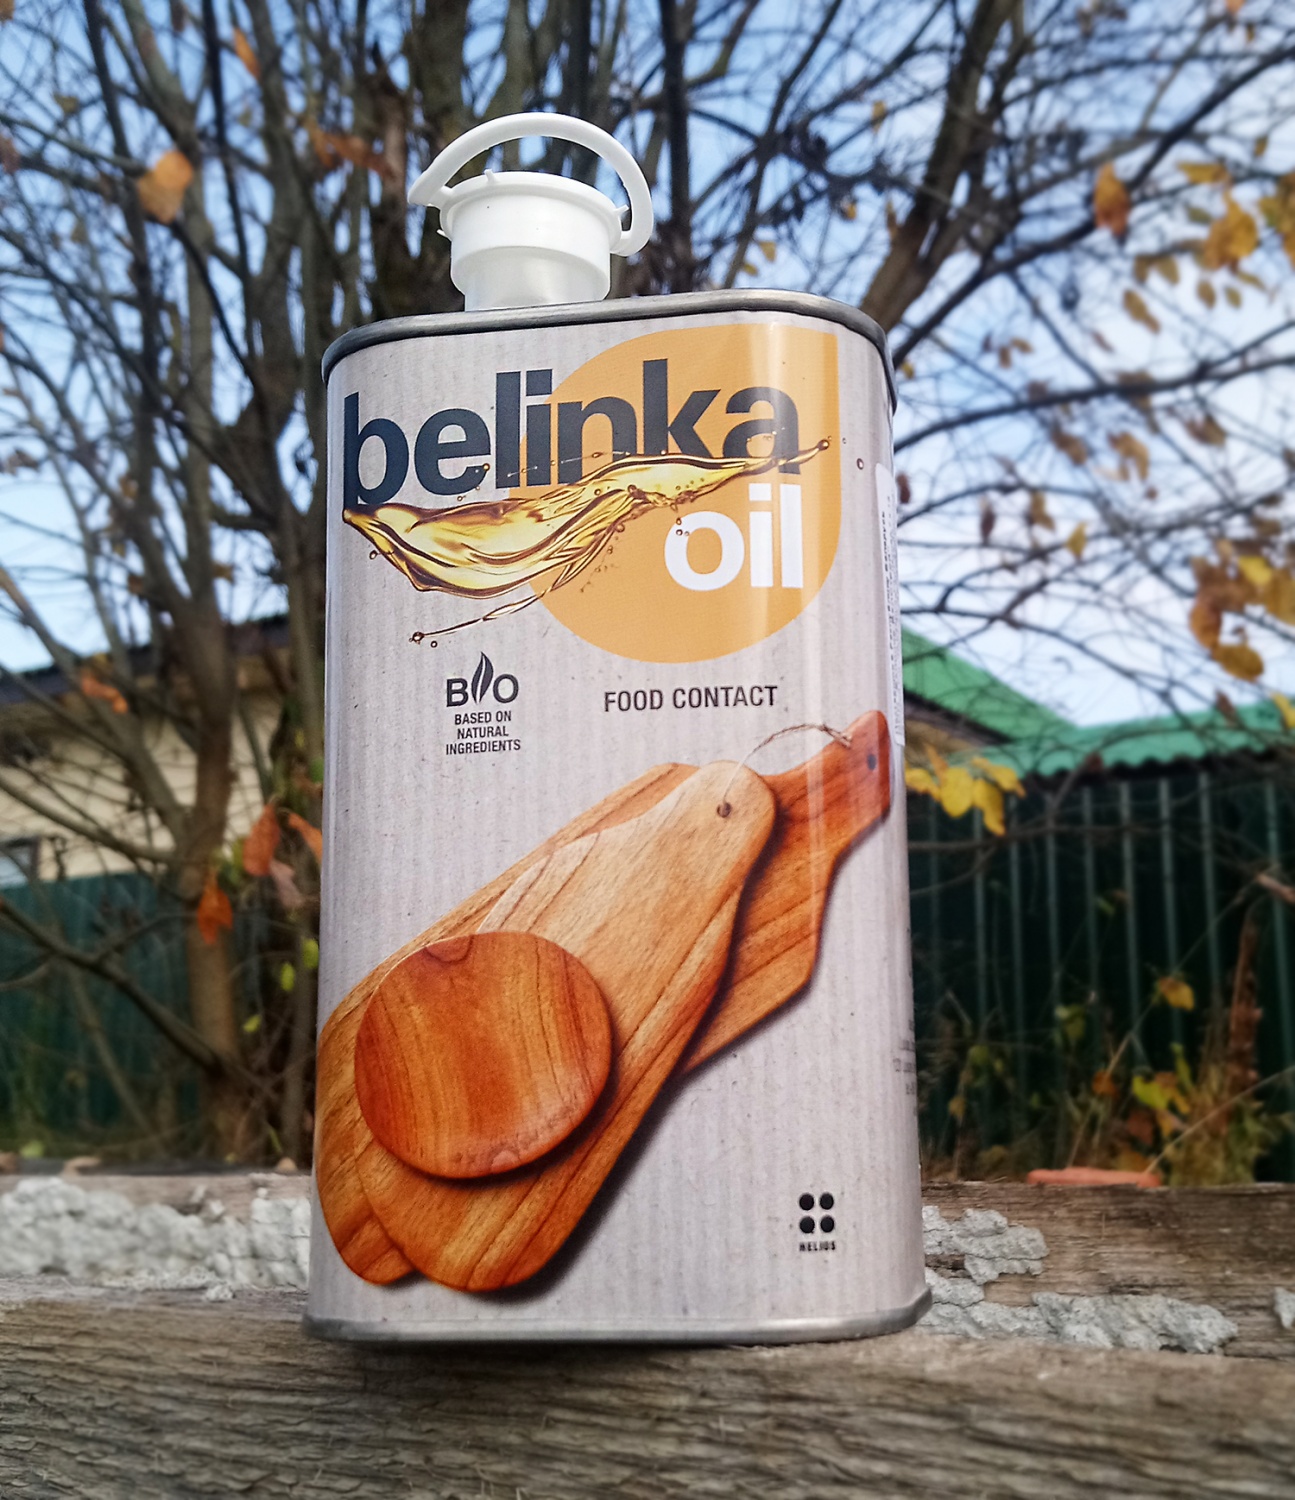 Belinka масло для древесины, соприкасающейся с продуктами питания | отзывы